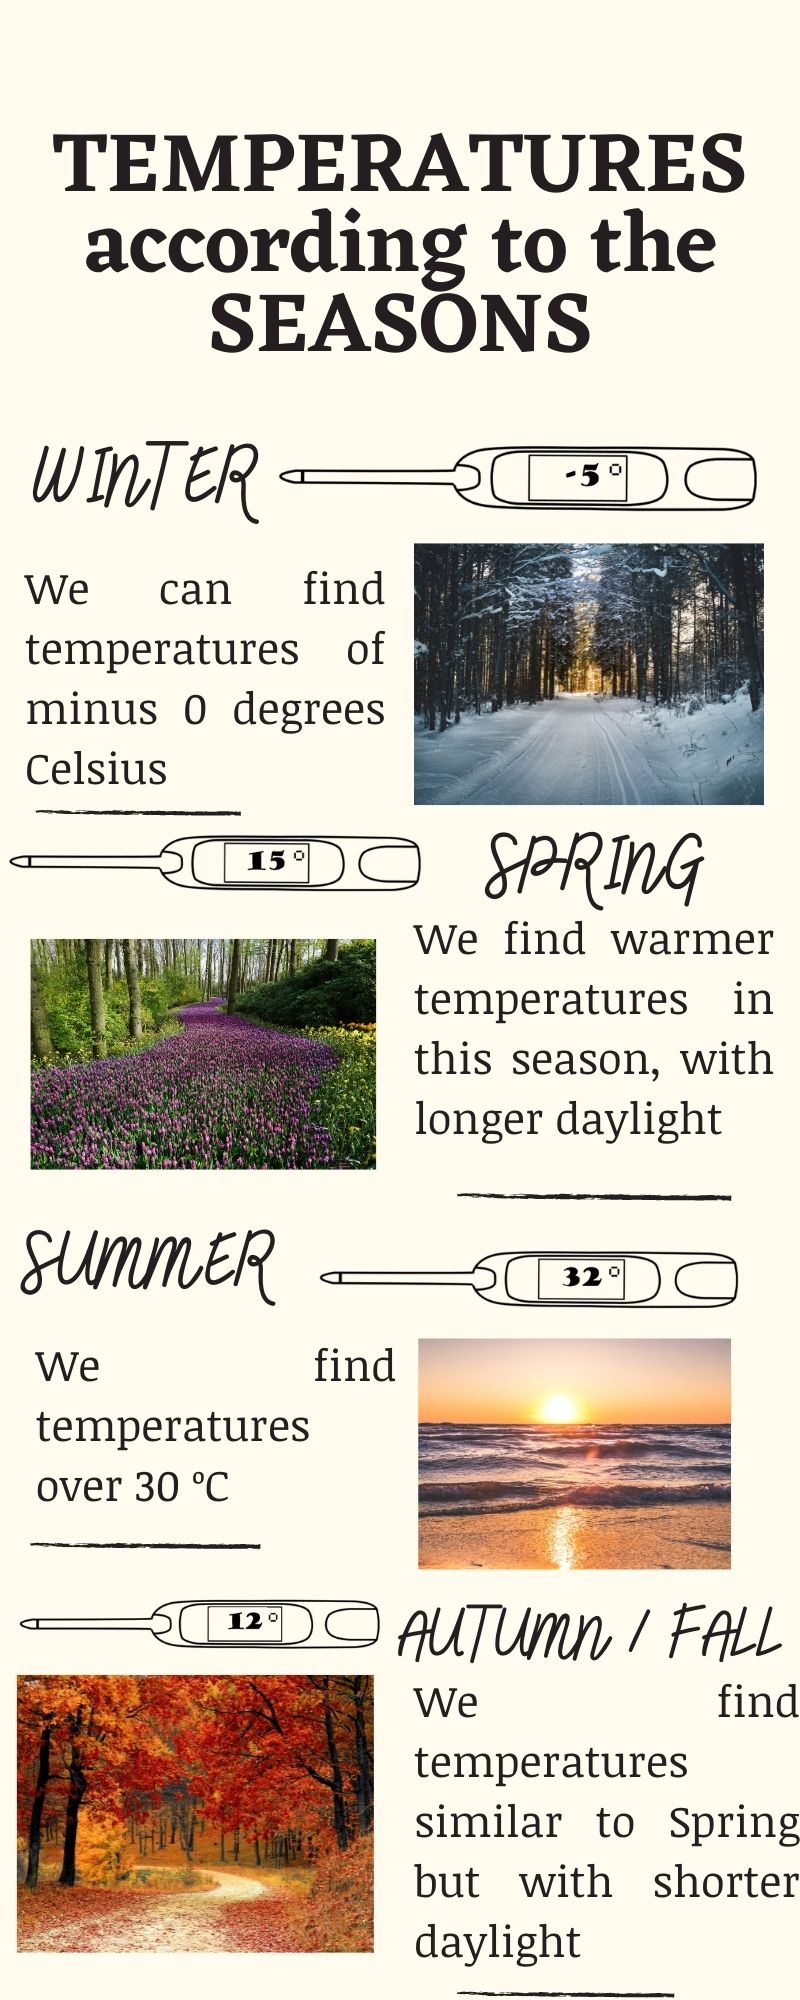 Infografía sobre las temperaturas en las estaciones del año y que incluye cuatro imágenes de paisajes correspondientes a cada estación: invierno, primavera, verano y otoño. 